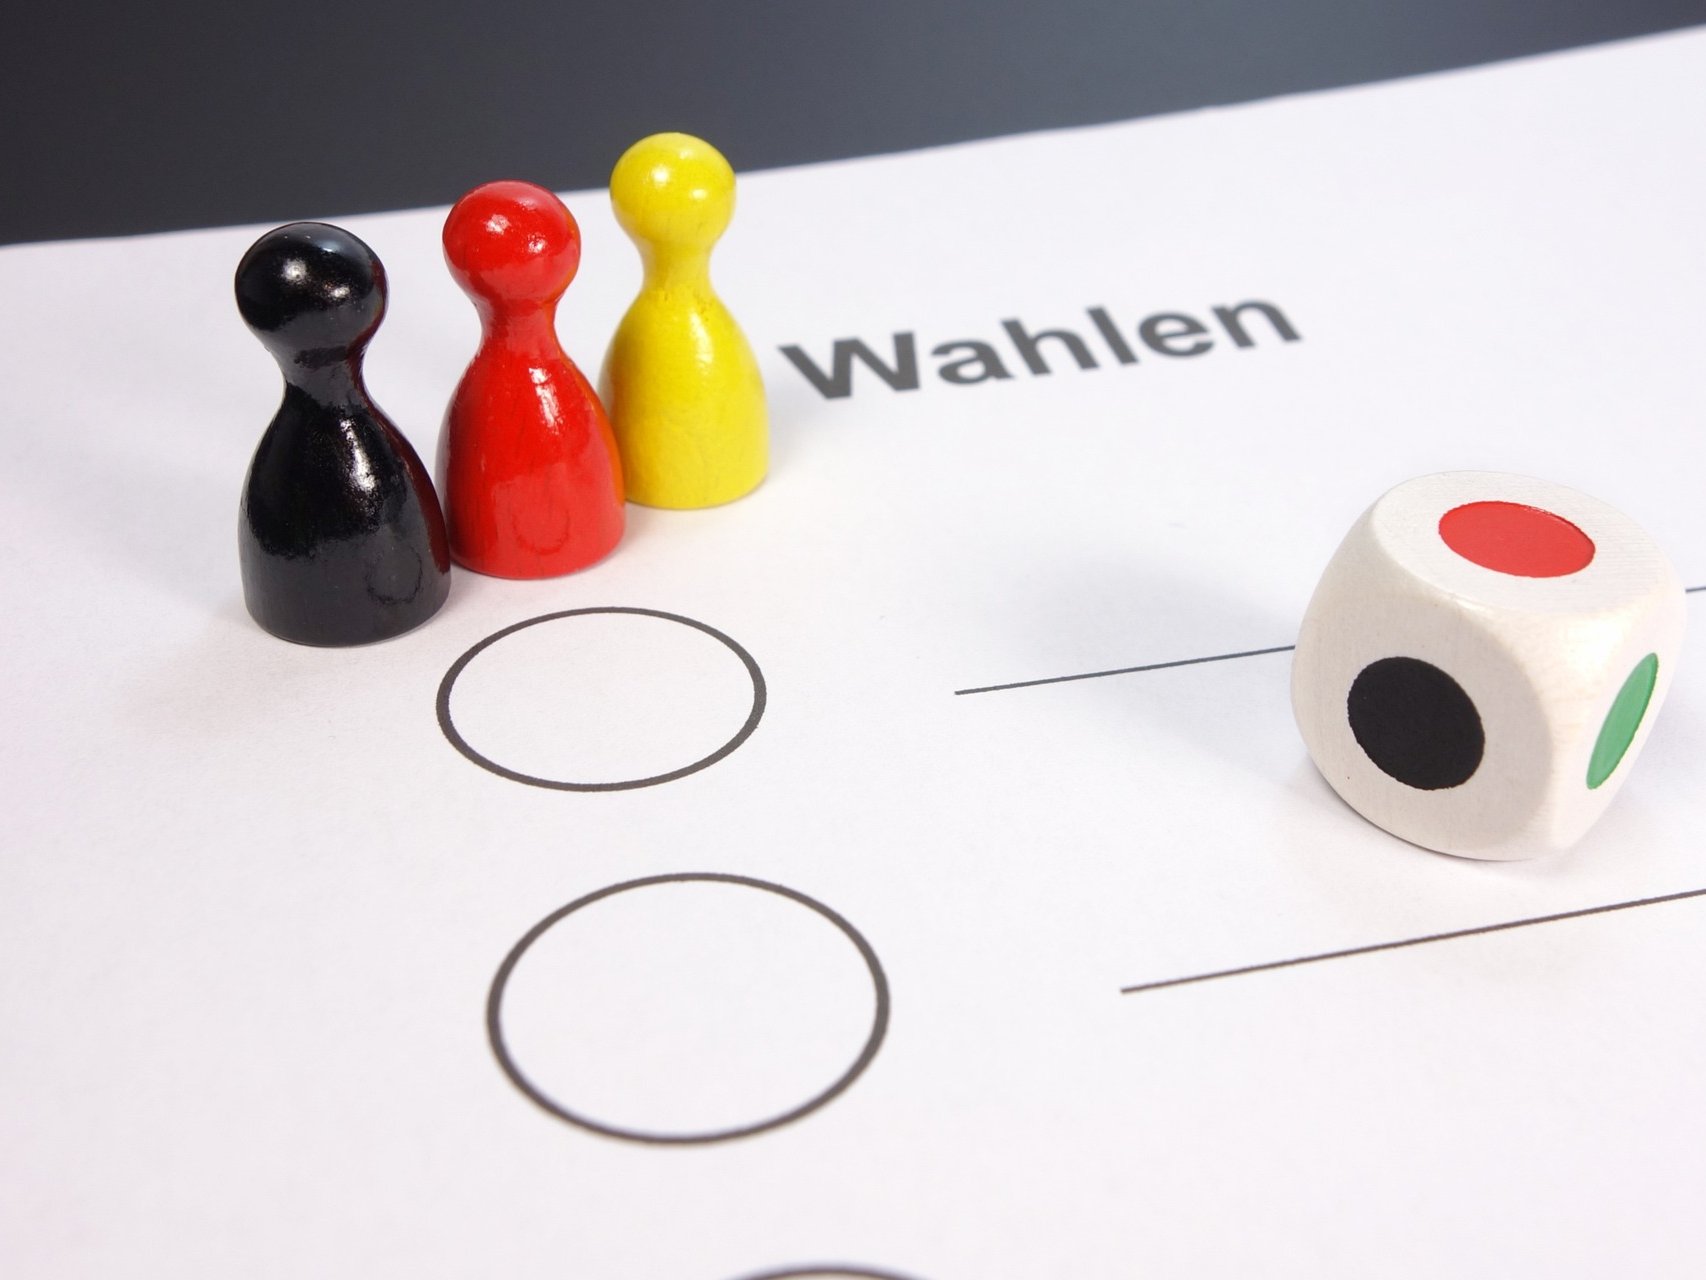 Schwarze, rote und gelbe Spielkegel stehen auf einem Wahlzettel am rechten Rand liegt ein Farbwürfel